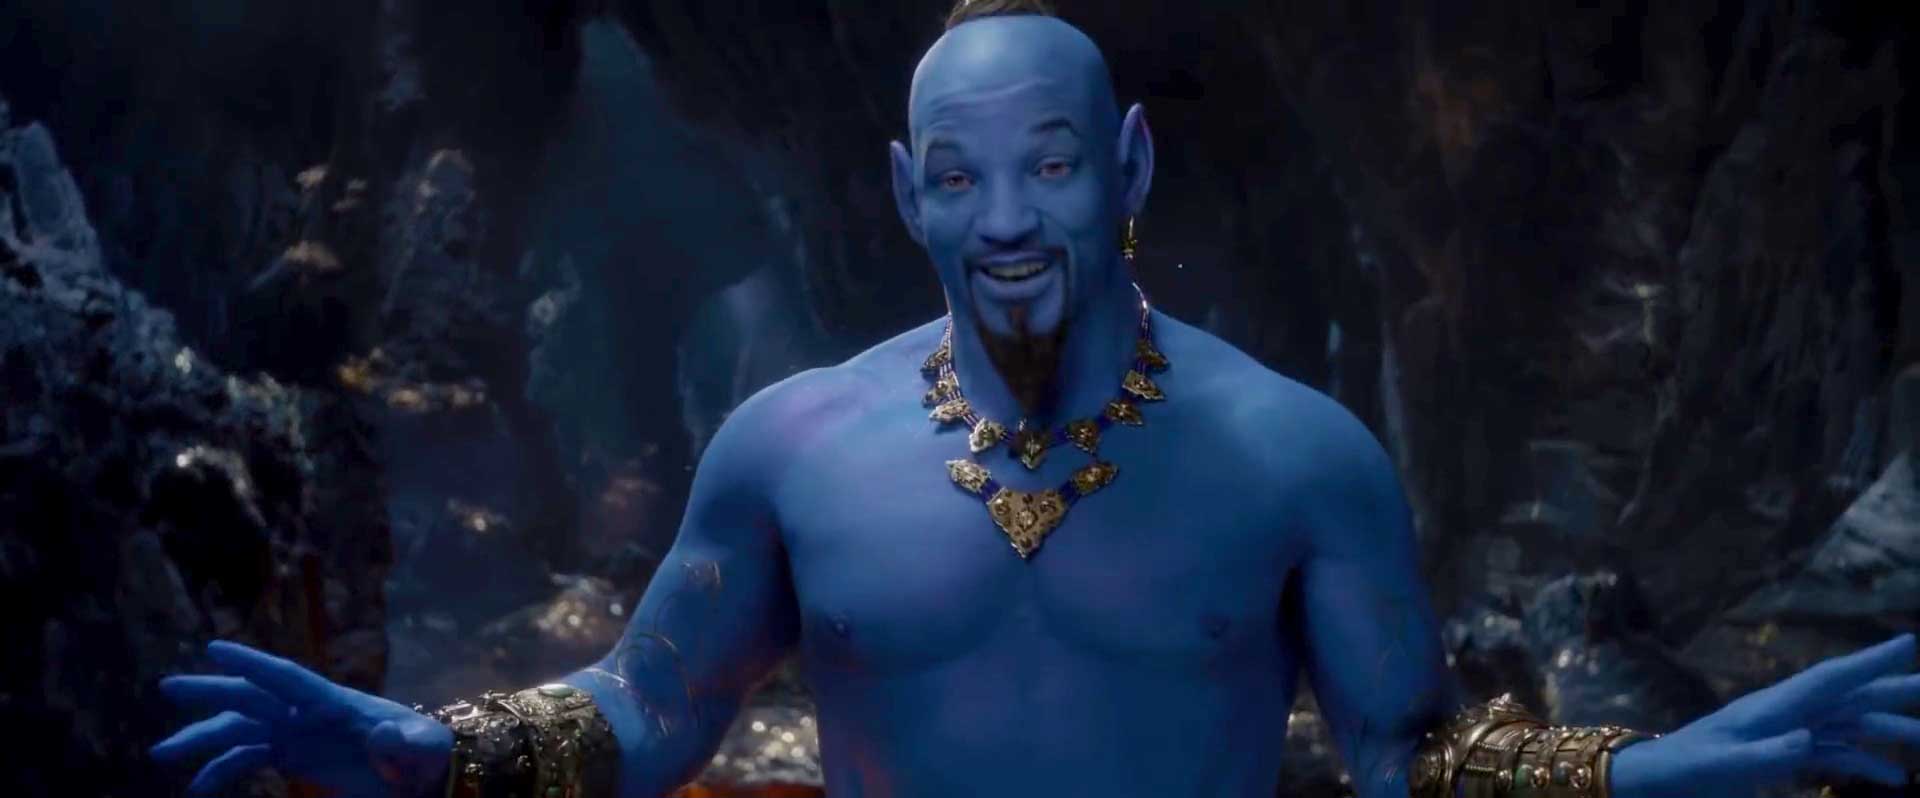 Aladdin Special Look Trailer Will Smith Genie